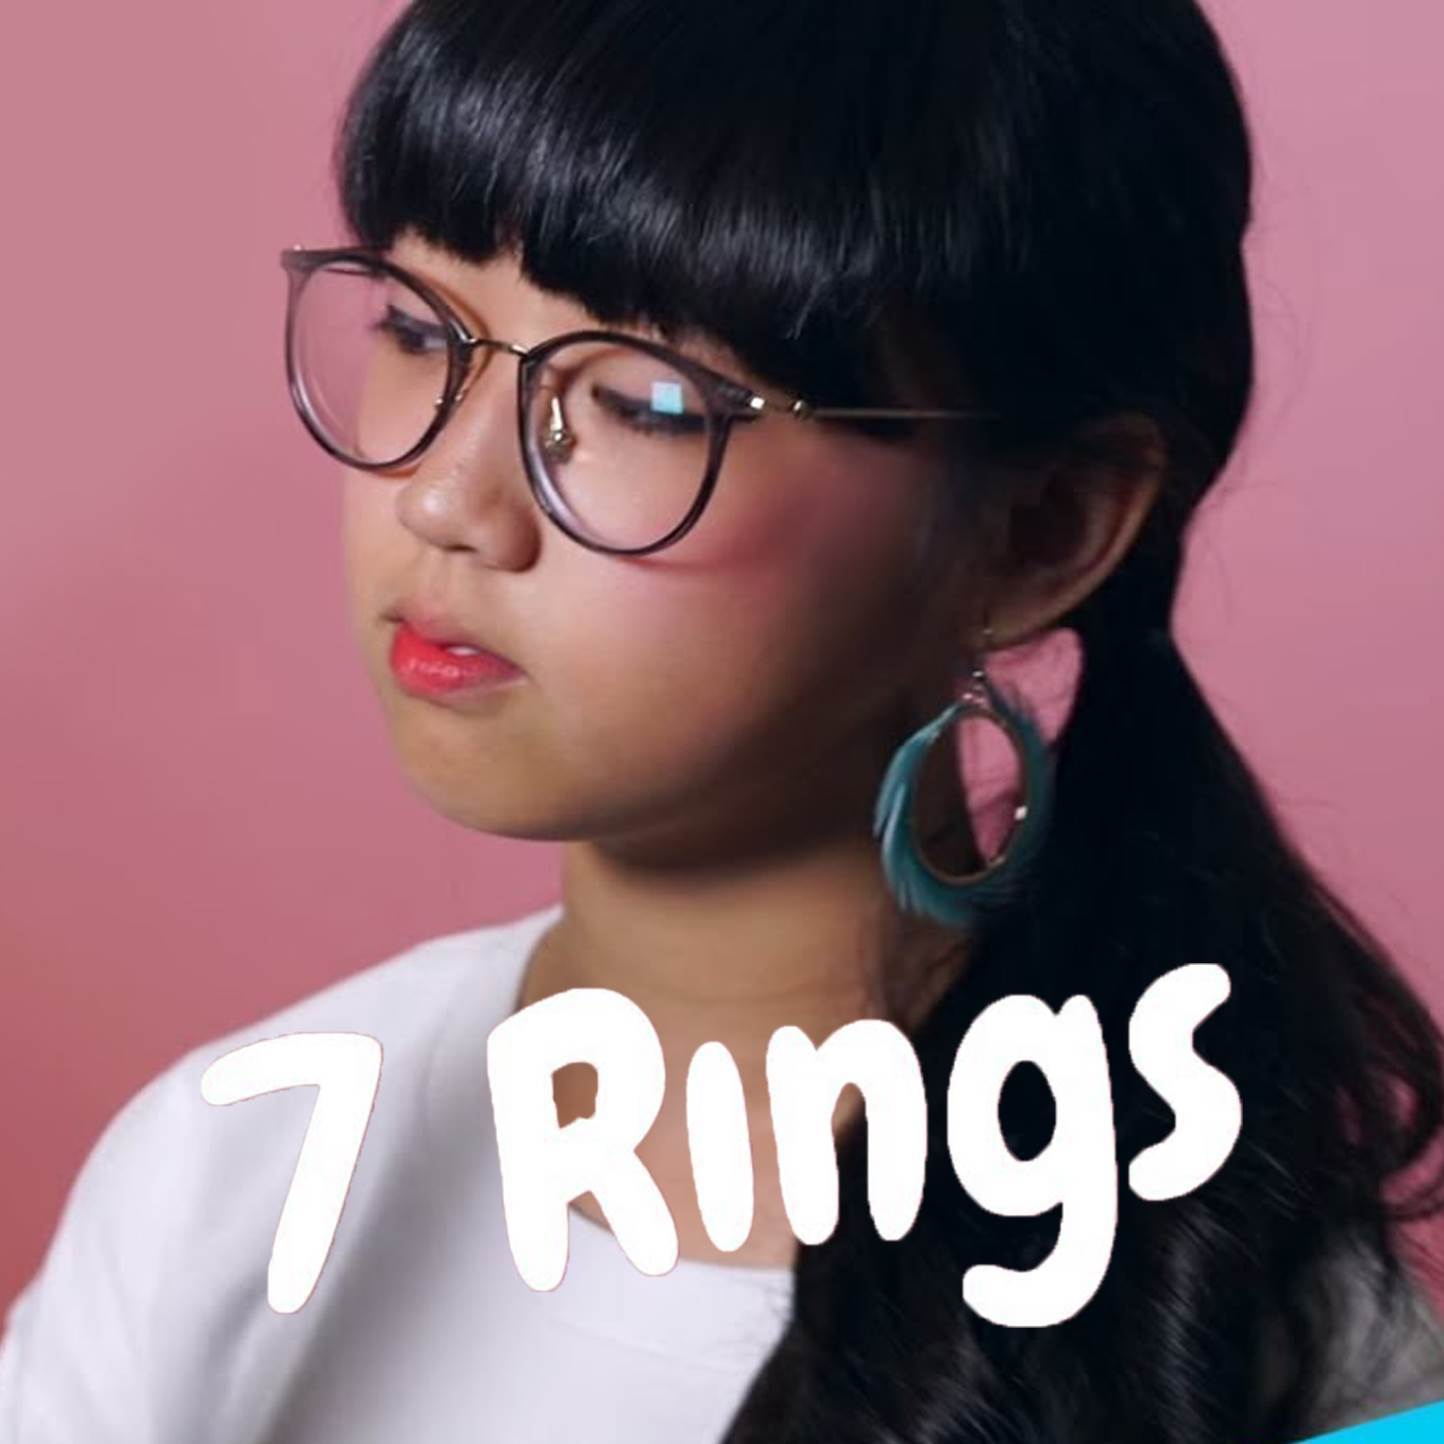 7 rings